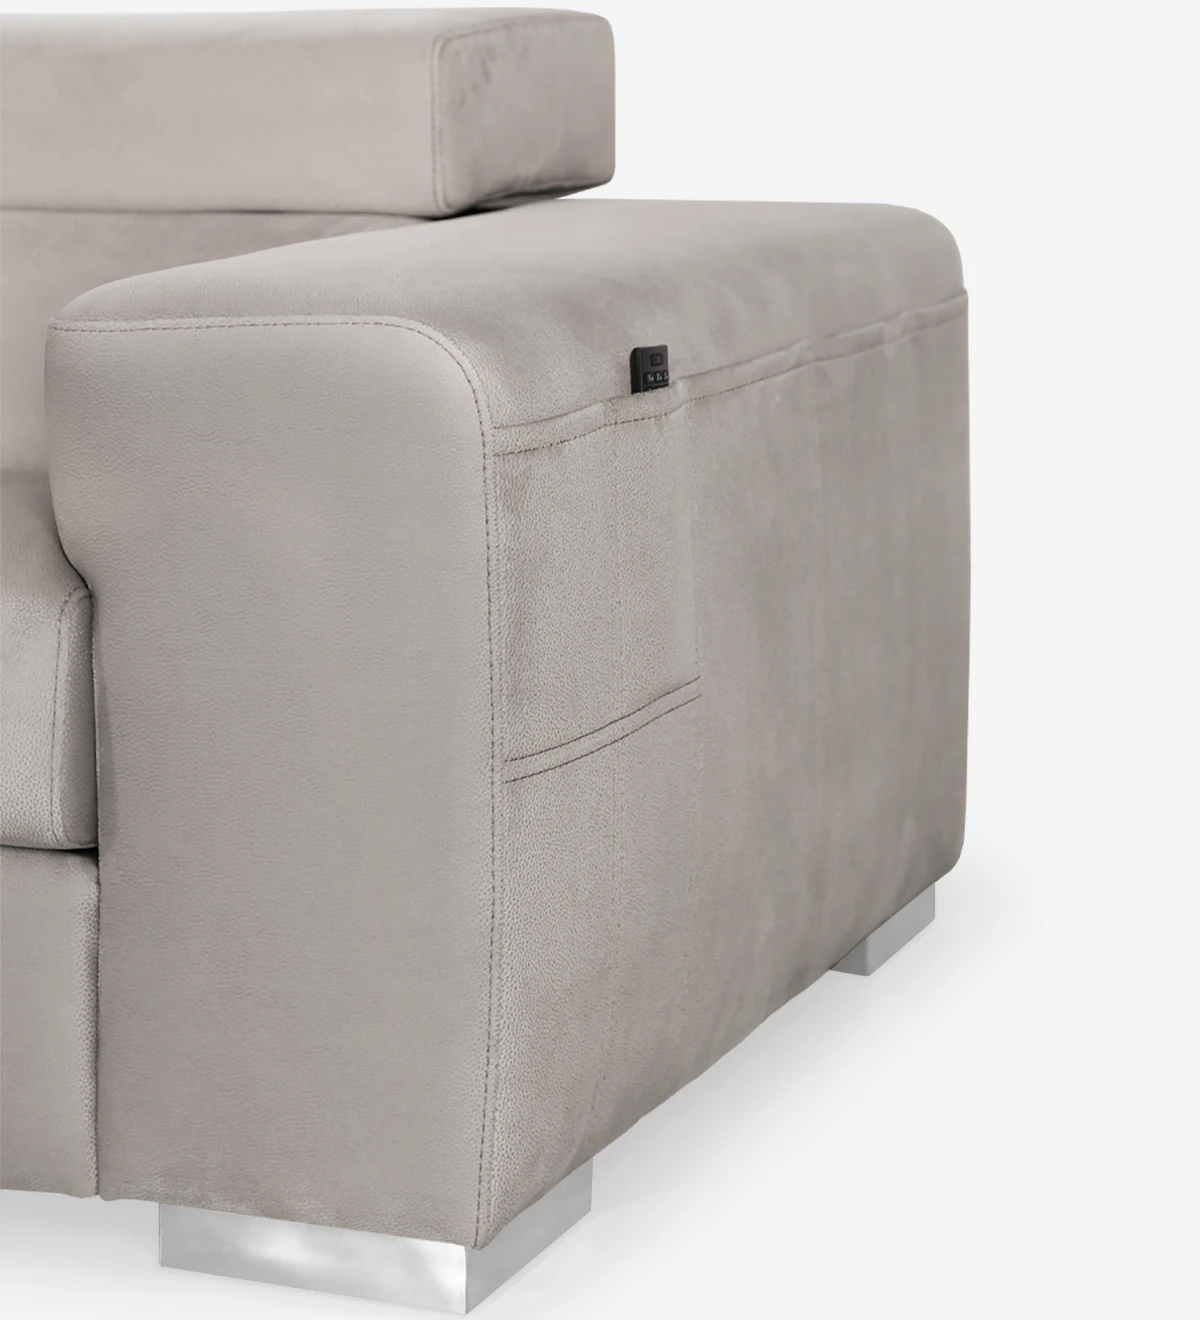 Sofá de 3 plazas con chaise longue, tapizado en tejido, con reposacabezas reclinables.